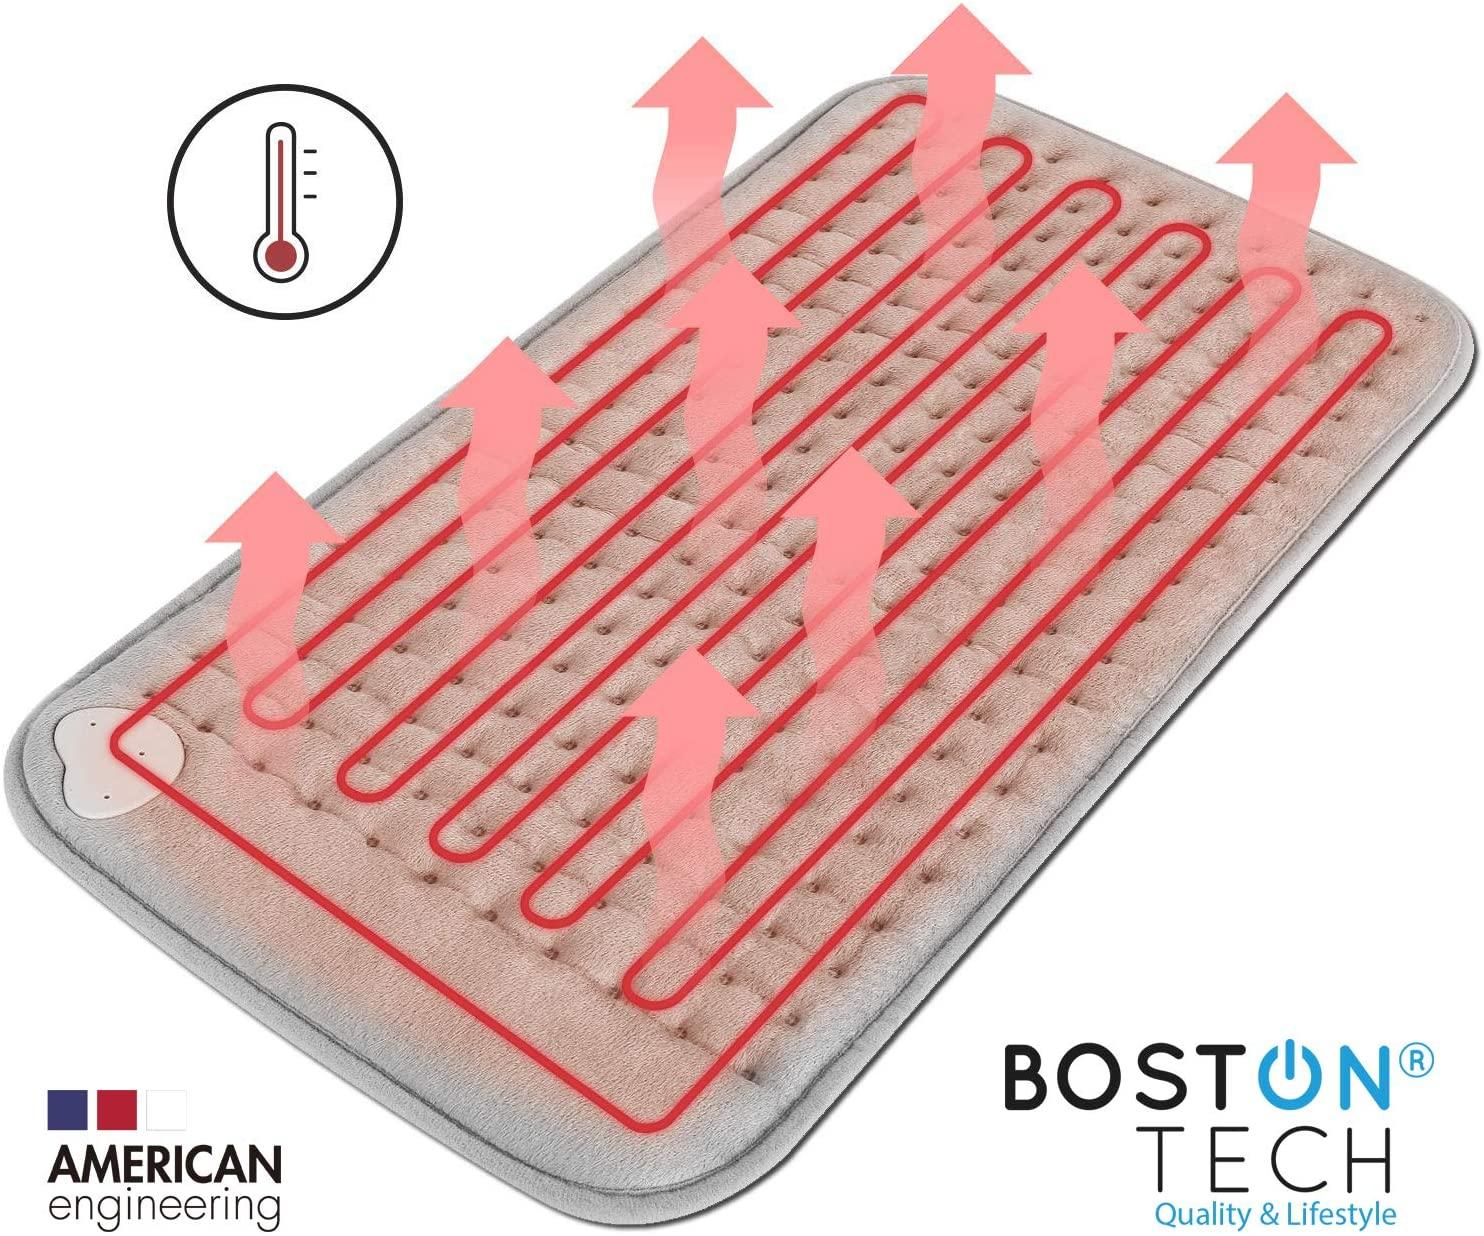 Manta Eléctrica de Calentado rápido - WE-115 - Bostontechstore